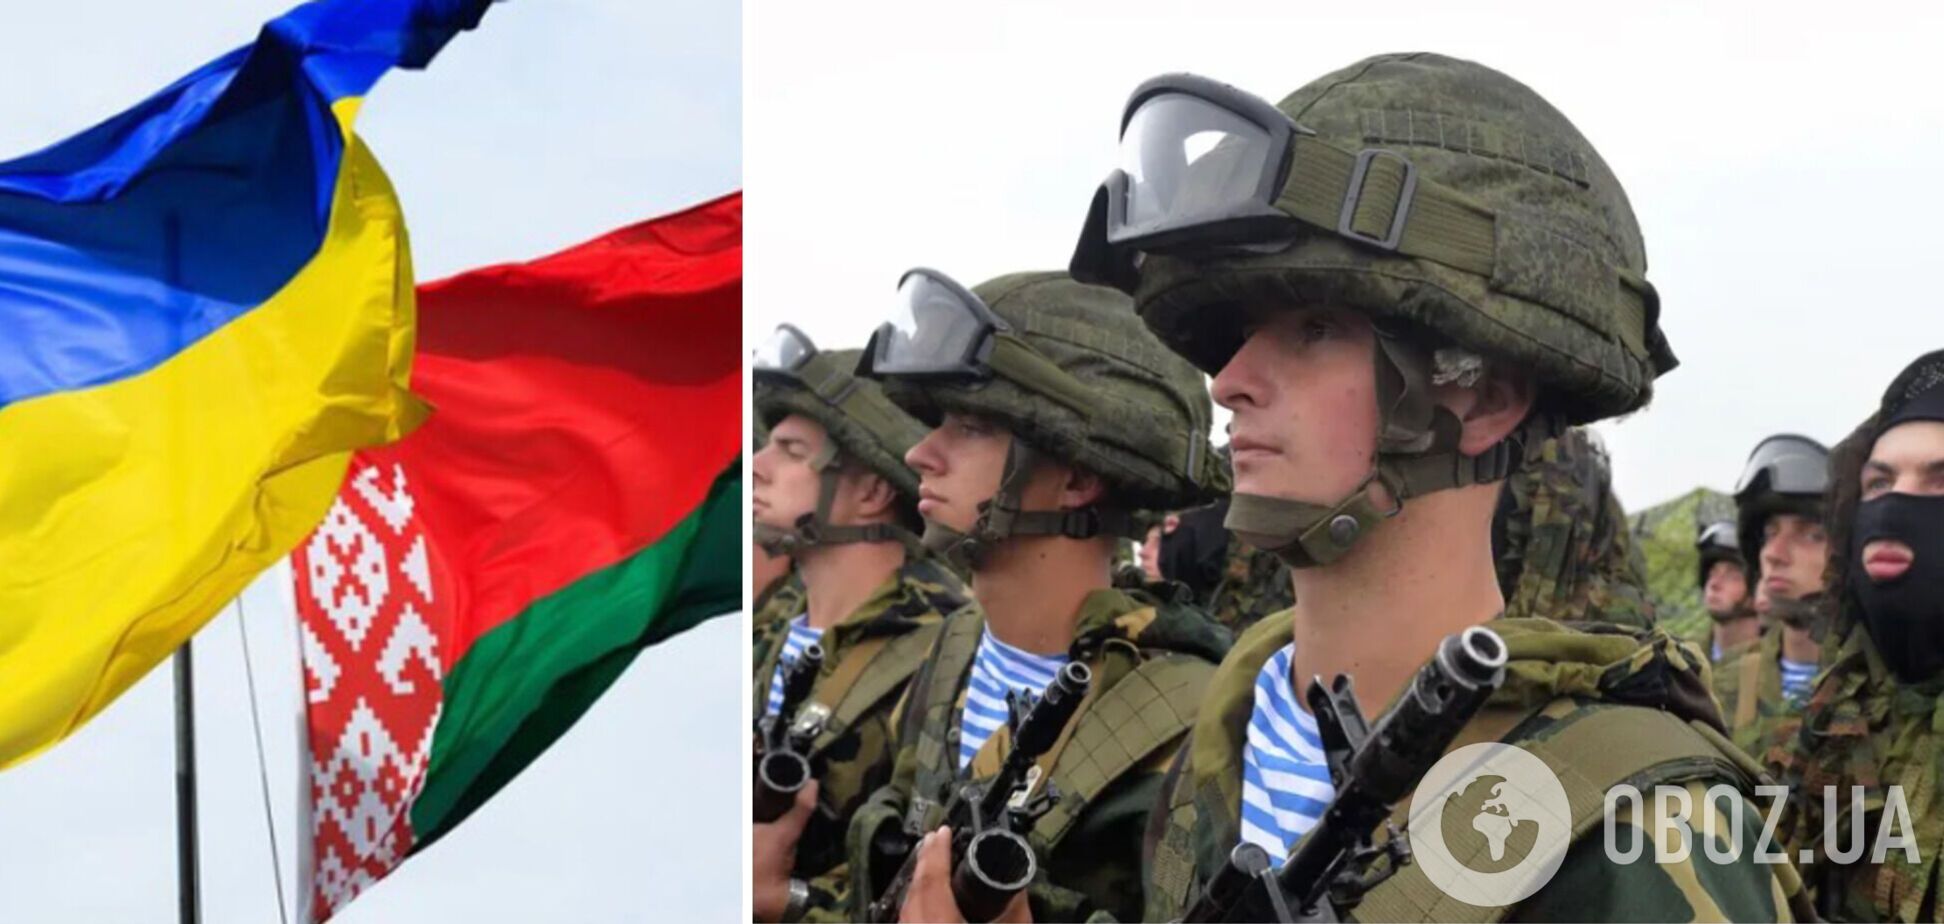 'Не провокуйте нас': військові Білорусі записали цинічне звернення до ЗСУ, згадавши про 'братство' народів. Відео